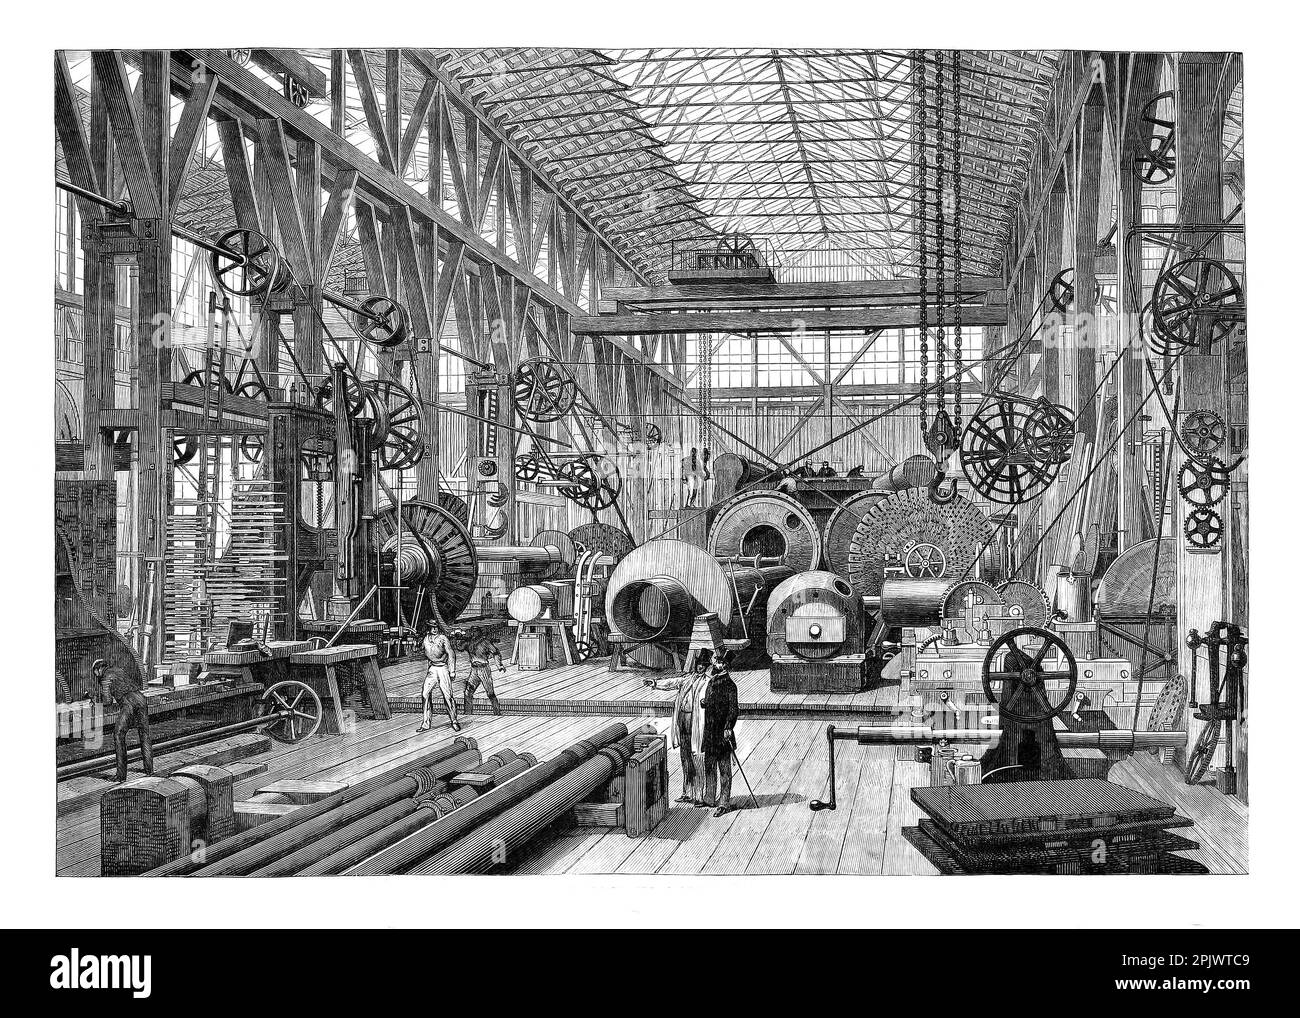 Die große Maschinenwerkstatt und Turnery in Penn's Marine Engine Factory in Greenwich, London, England im Jahr 1865. Das Unternehmen wurde zum Hauptlieferanten der Royal Navy, als es den Übergang von Segel- zu Dampf-Energie vollzog. Stockfoto